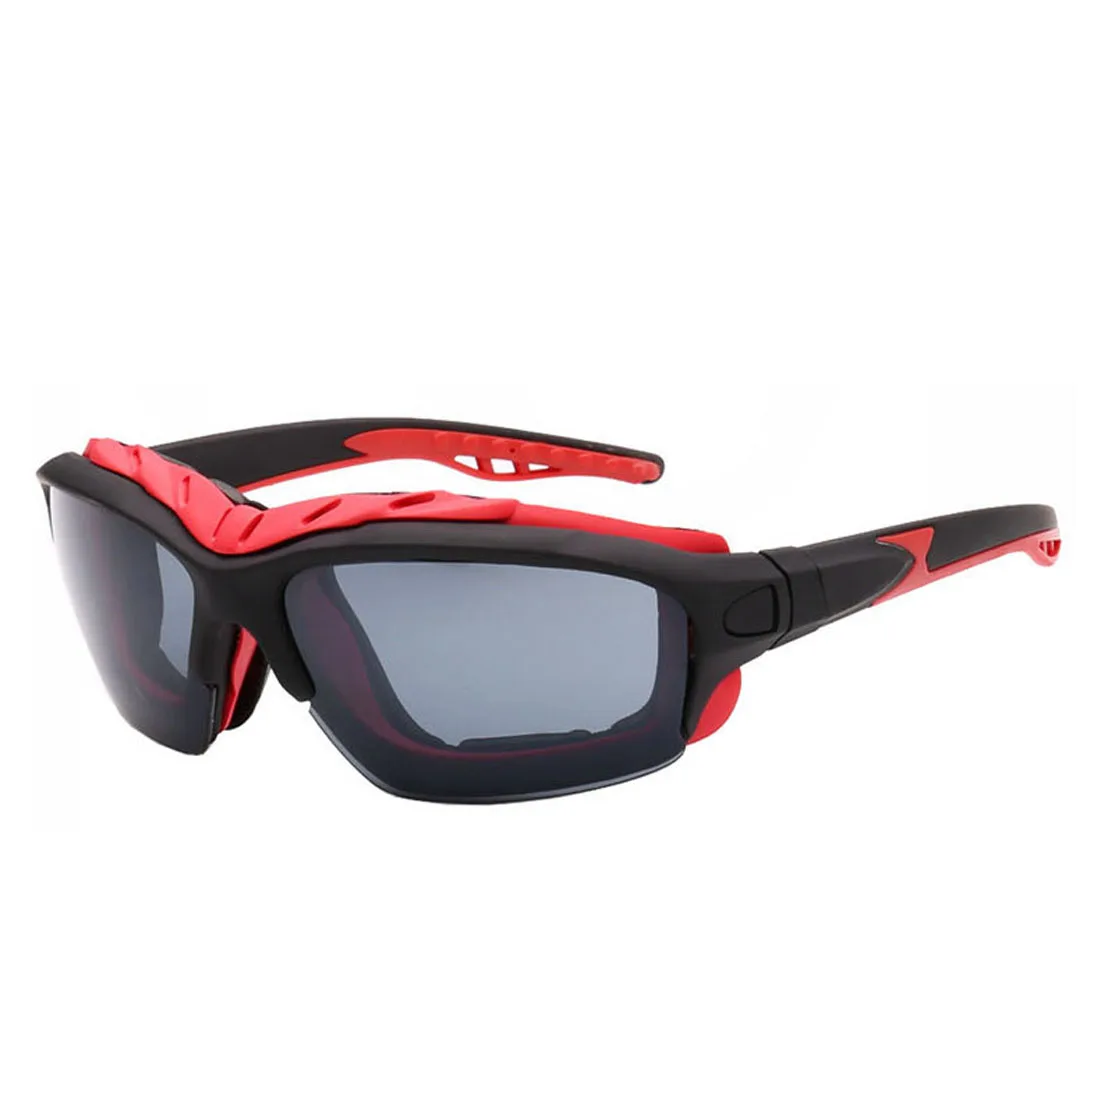 Дизайн унисекс Спорт Горный велосипед Солнцезащитные очки Велоспорт велосипед Открытый Кемпинг походов, альпинизма очки - Цвет: black gray